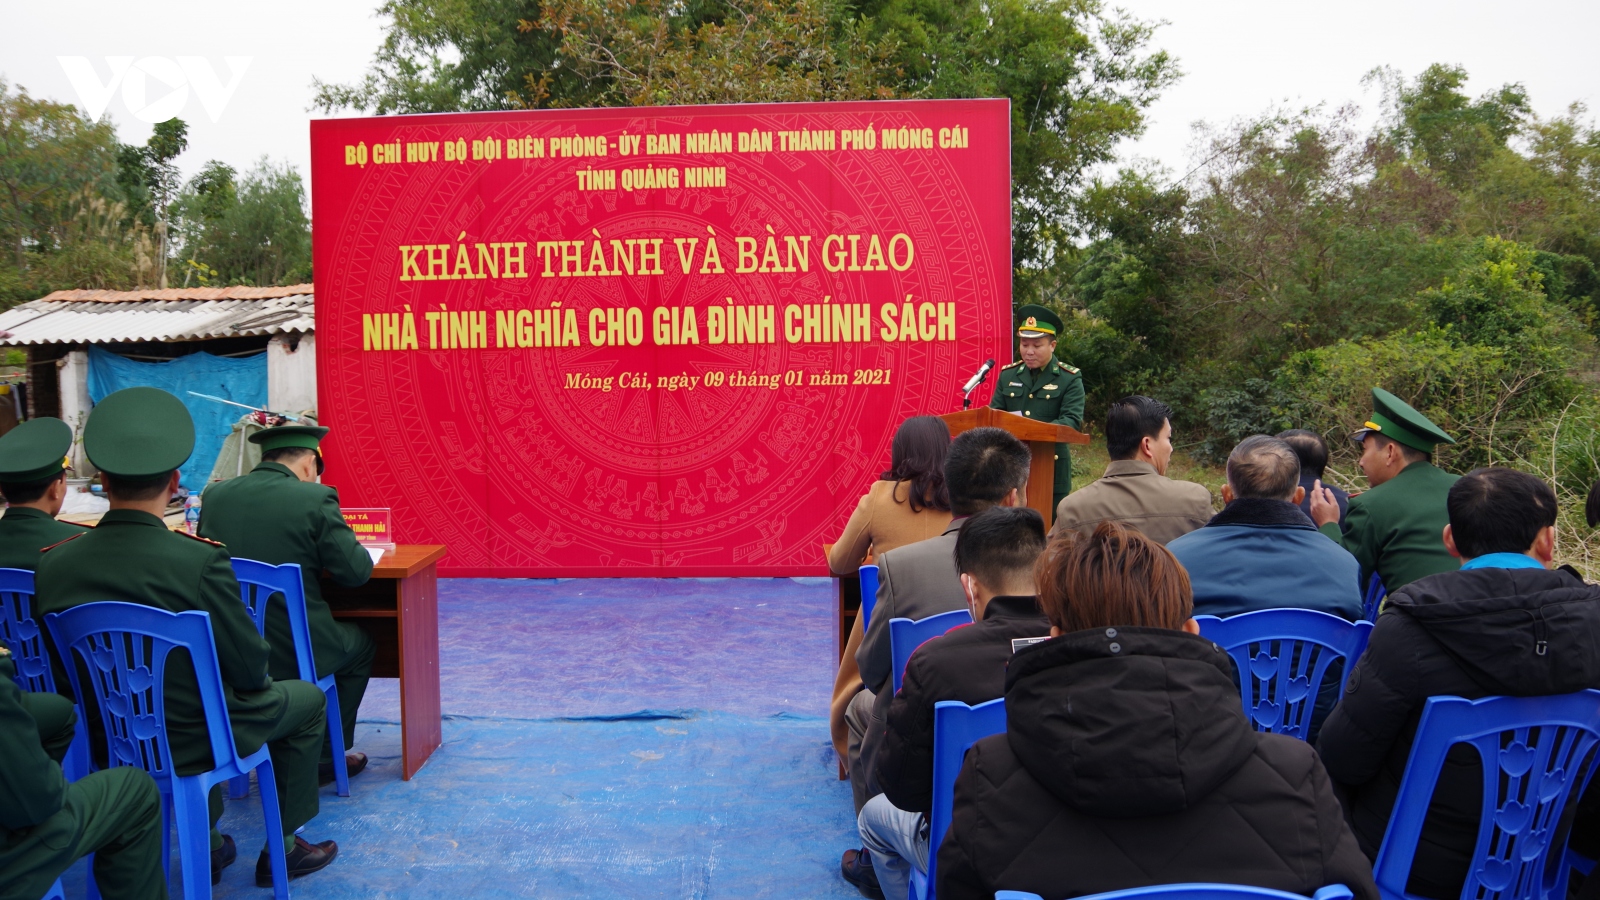 Bộ đội biên phòng Quảng Ninh tặng nhà tình nghĩa cho gia đình chính sách